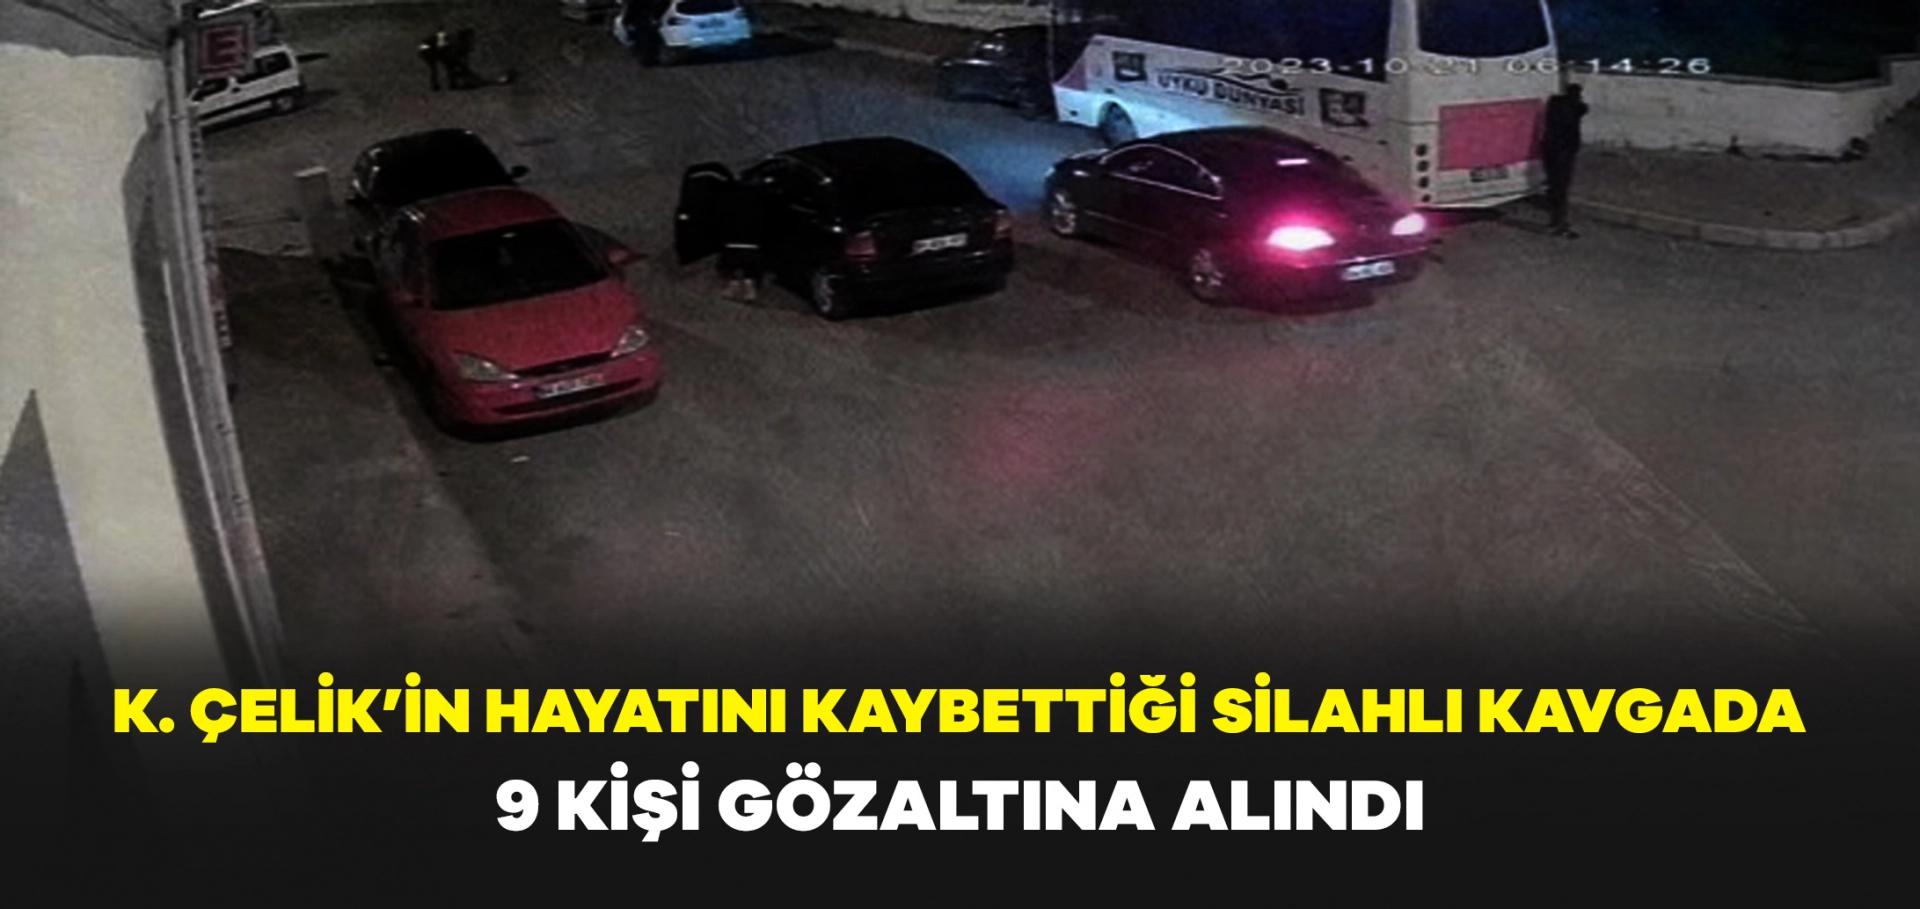 Uşak'ta 1 kişinin öldüğü silahlı kavgaya ilişkin 9 şüpheliye gözaltı